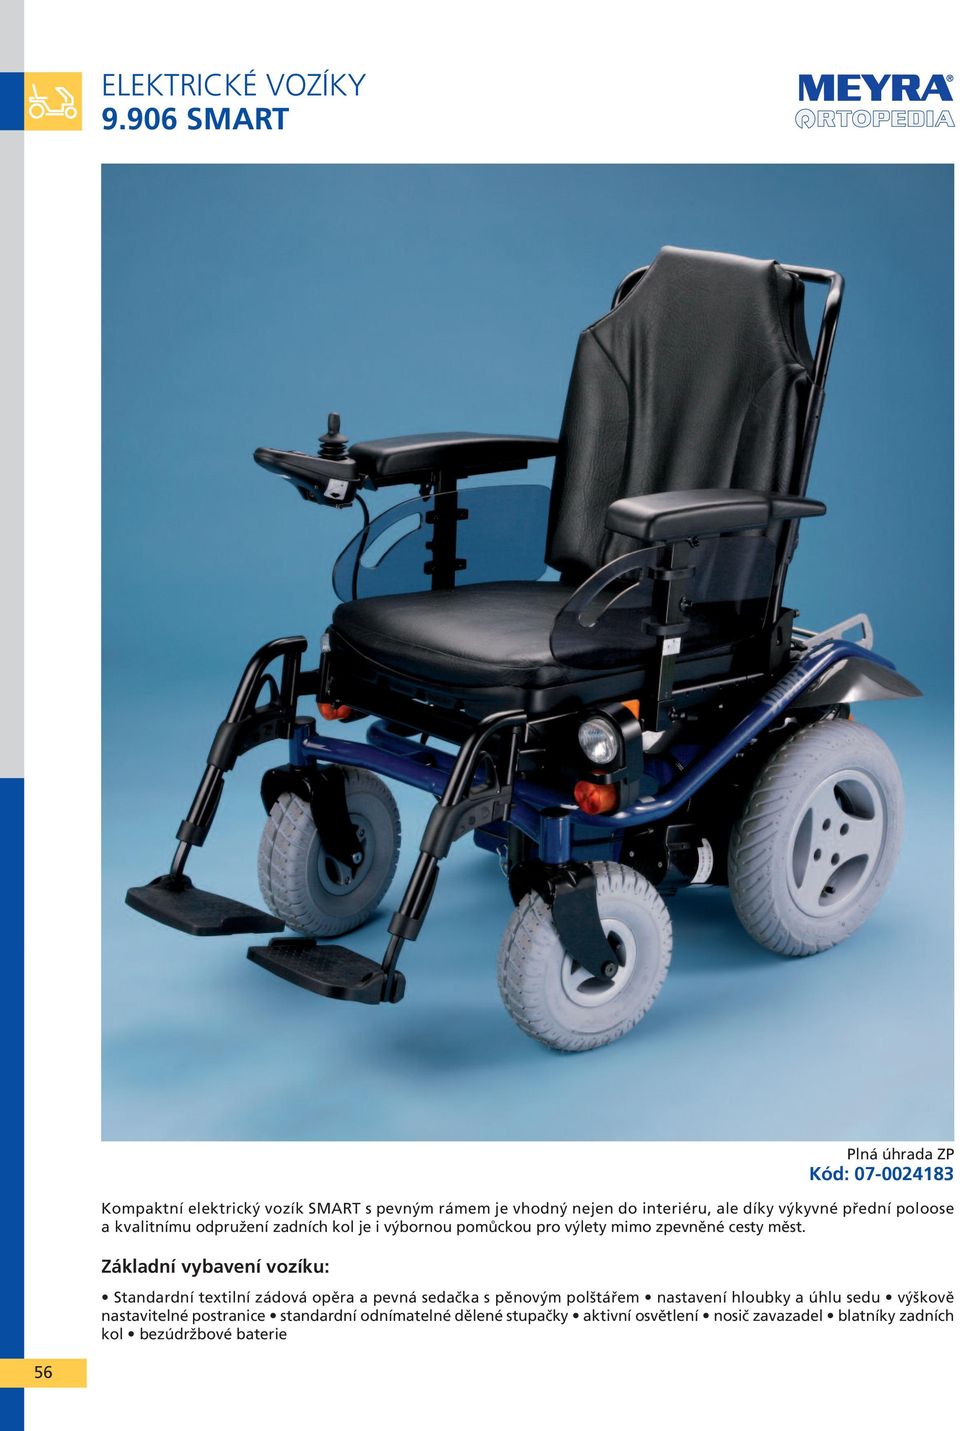 Základní vybavení vozíku: Standardní textilní zádová opěra a pevná sedačka s pěnovým polštářem nastavení hloubky a úhlu sedu